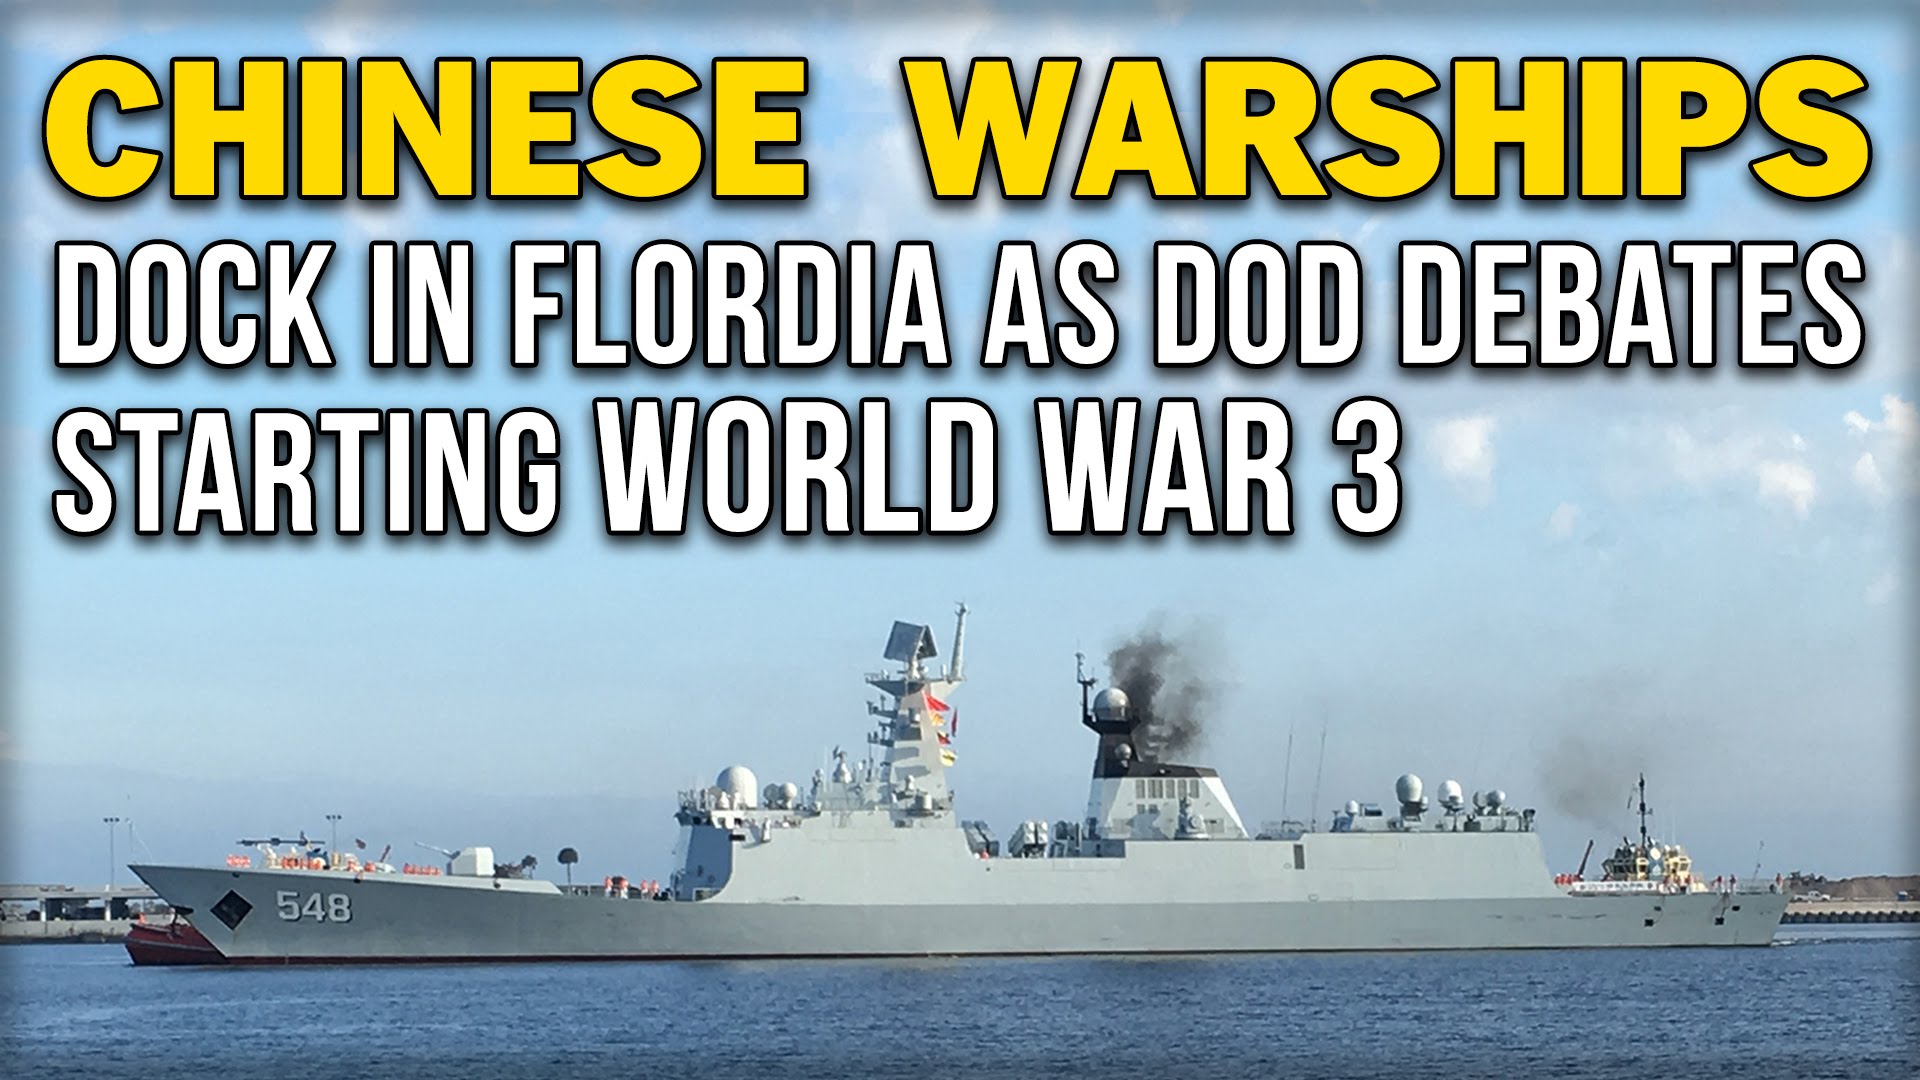 CHINESE WARSHIPS DOCK IN FLORIDA AS DOD DEBATES STARTING WORLD WAR 3